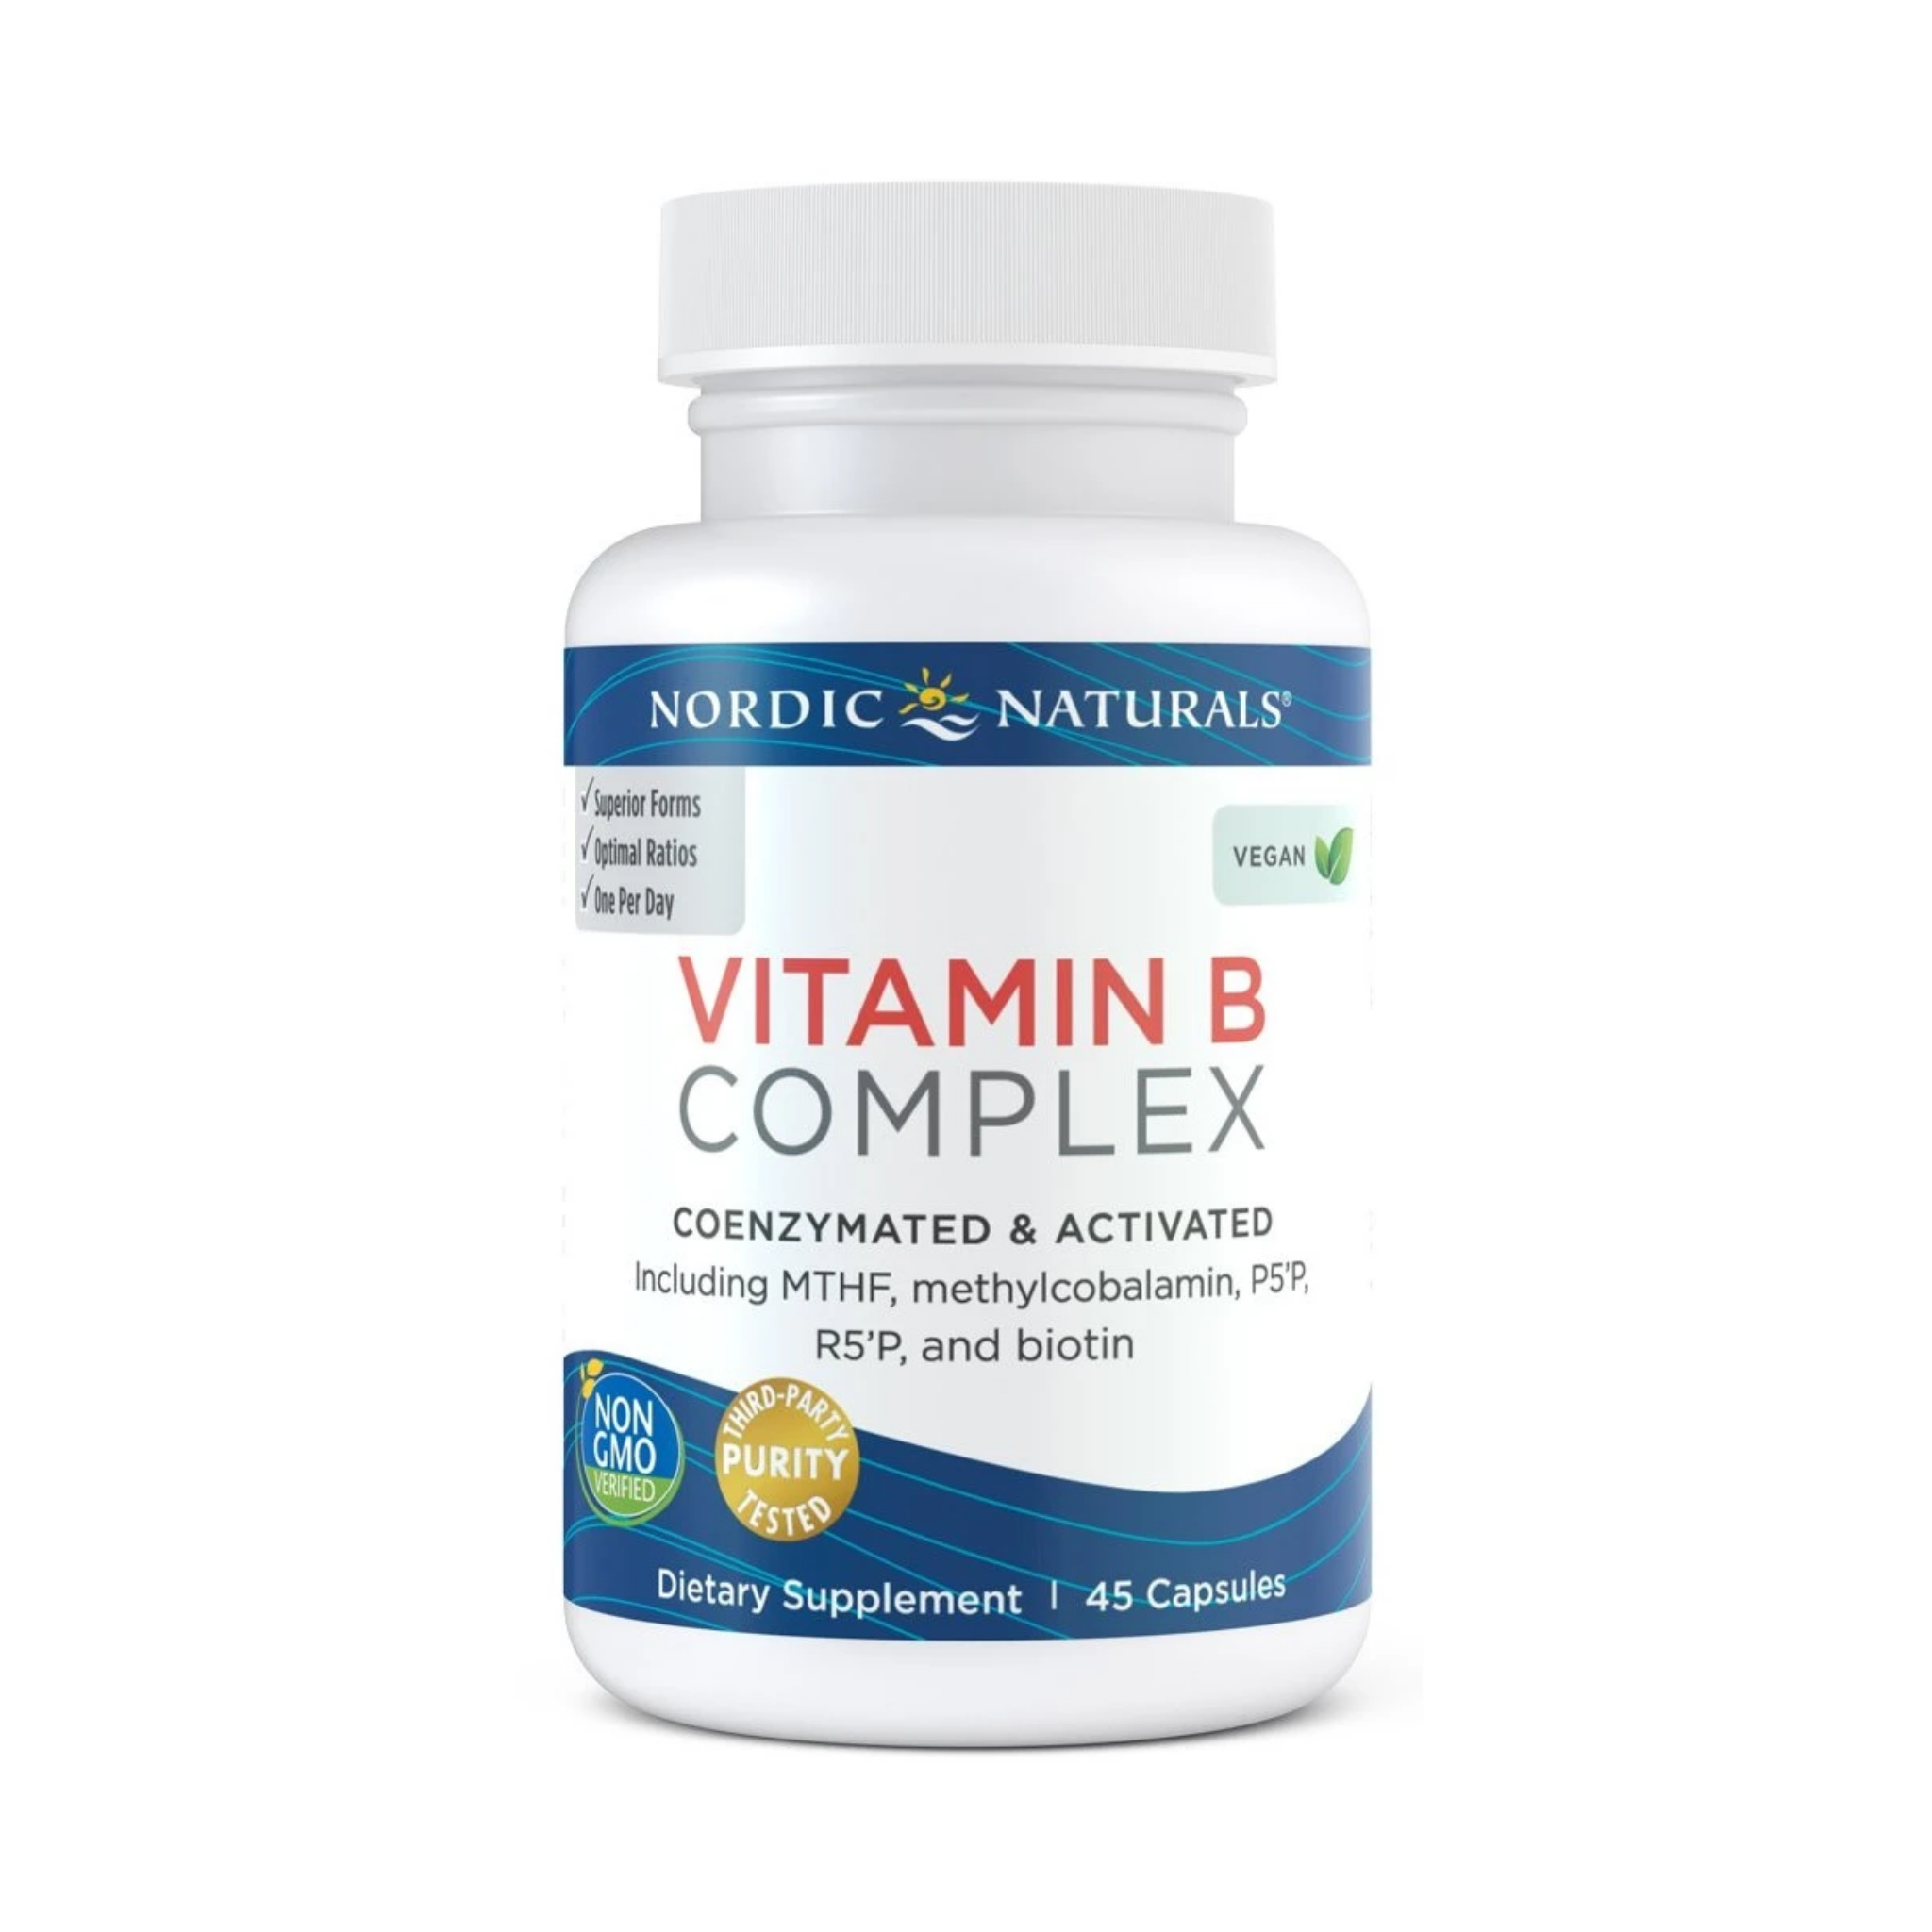 Nordic Naturals Vitamin B Complex